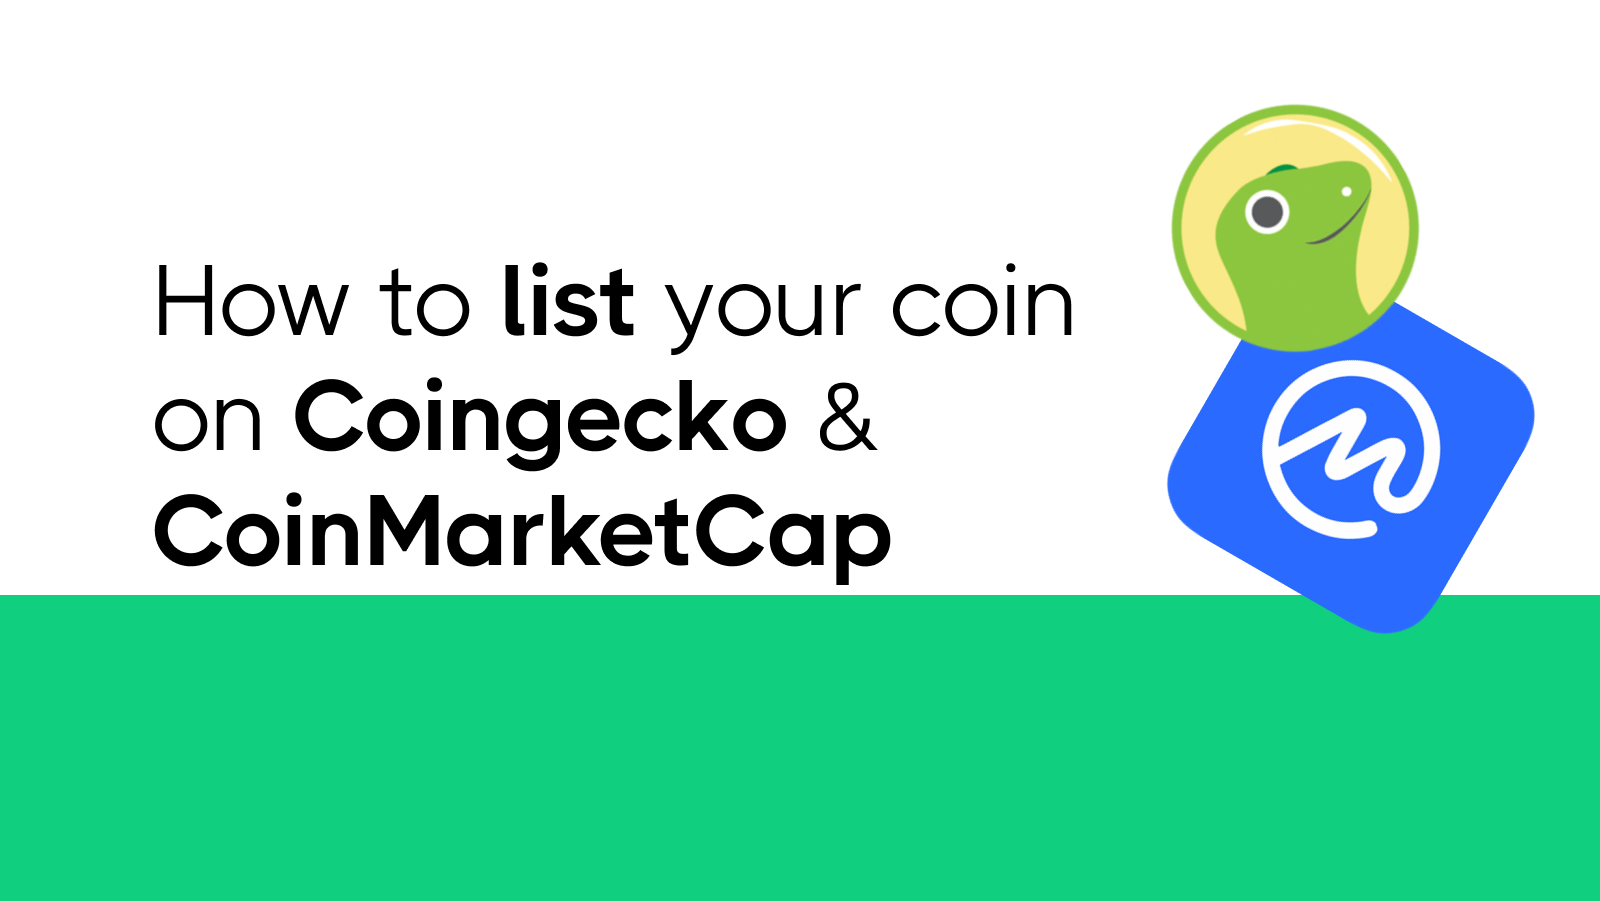 CoinMarketCap/ Coingecko Token Listings – WEB3 PROMO